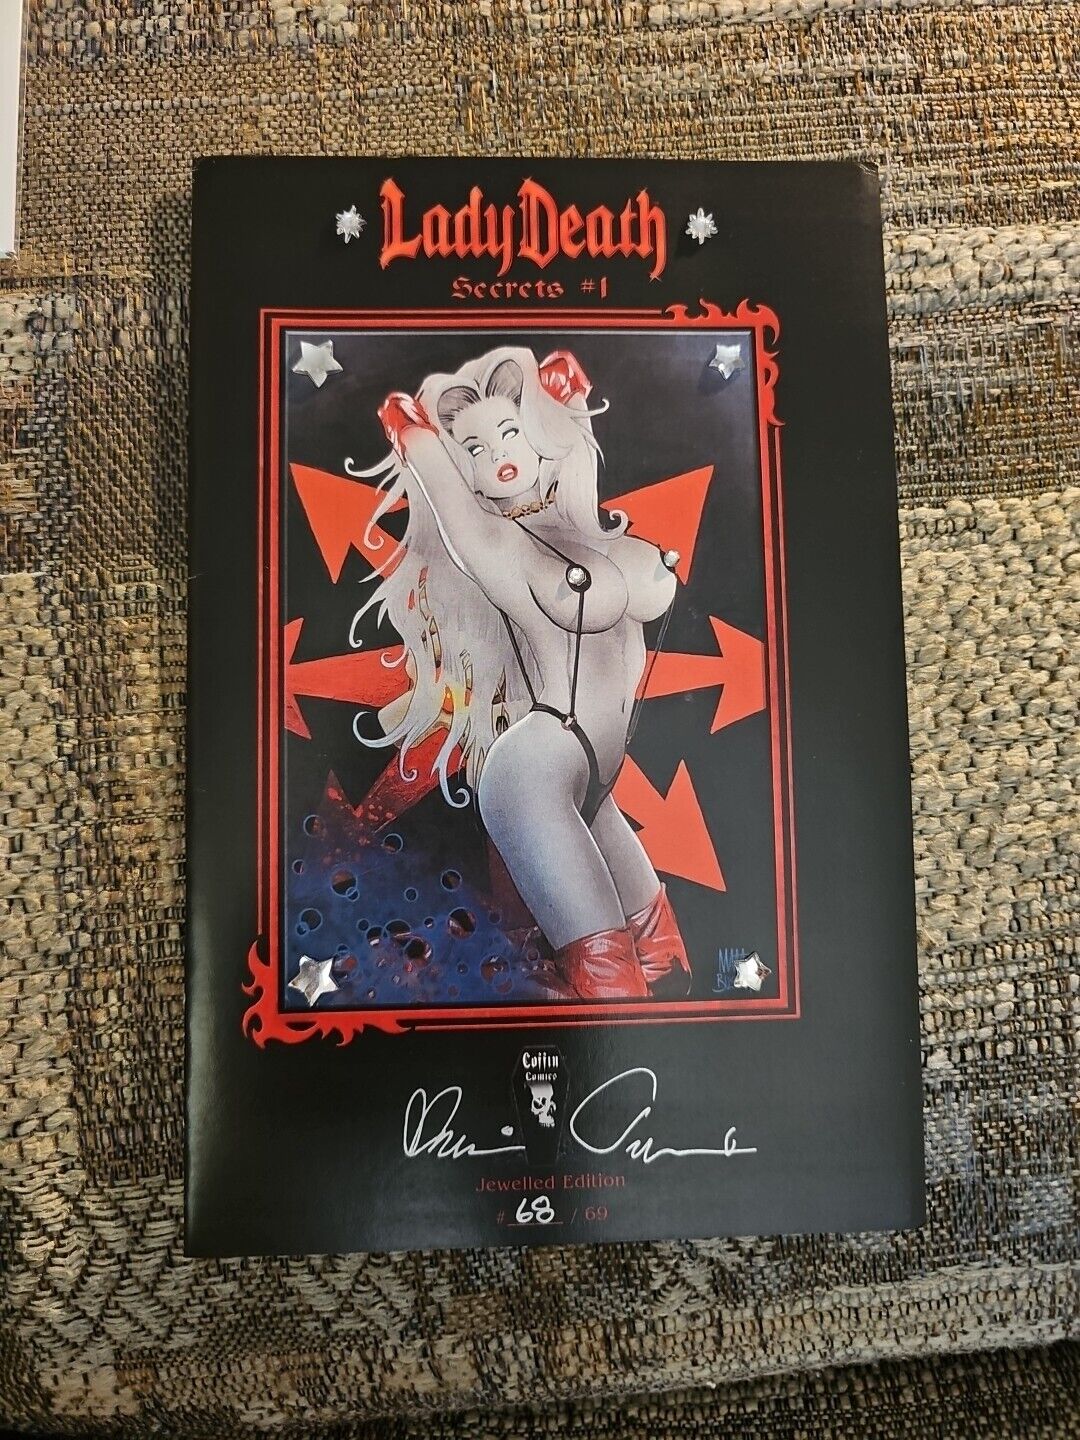 Lady Death Secrets Jewelled Ed Lim 68/69, Coffin Comics